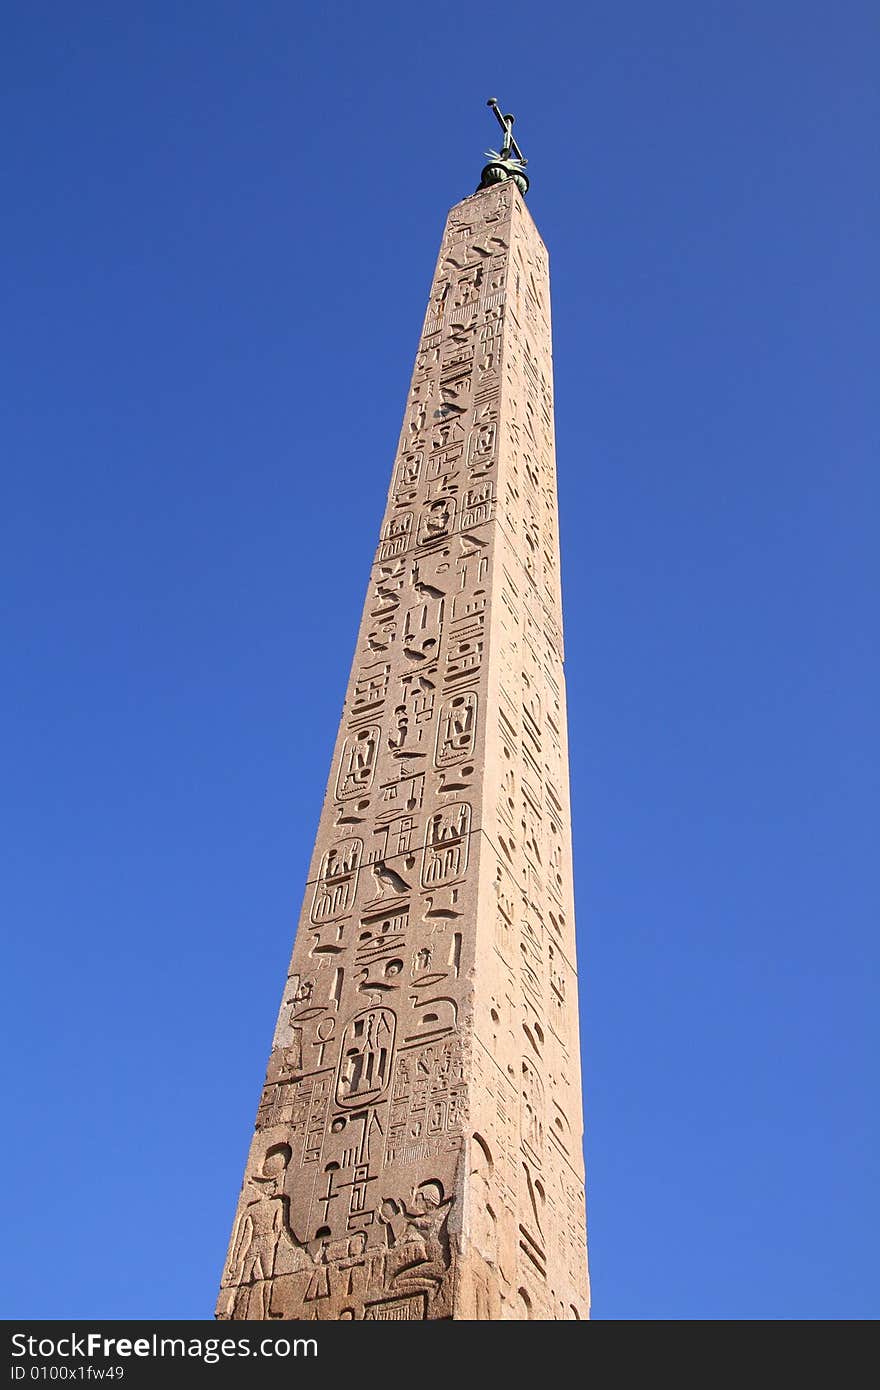 Obelisk in People Square (Rome)